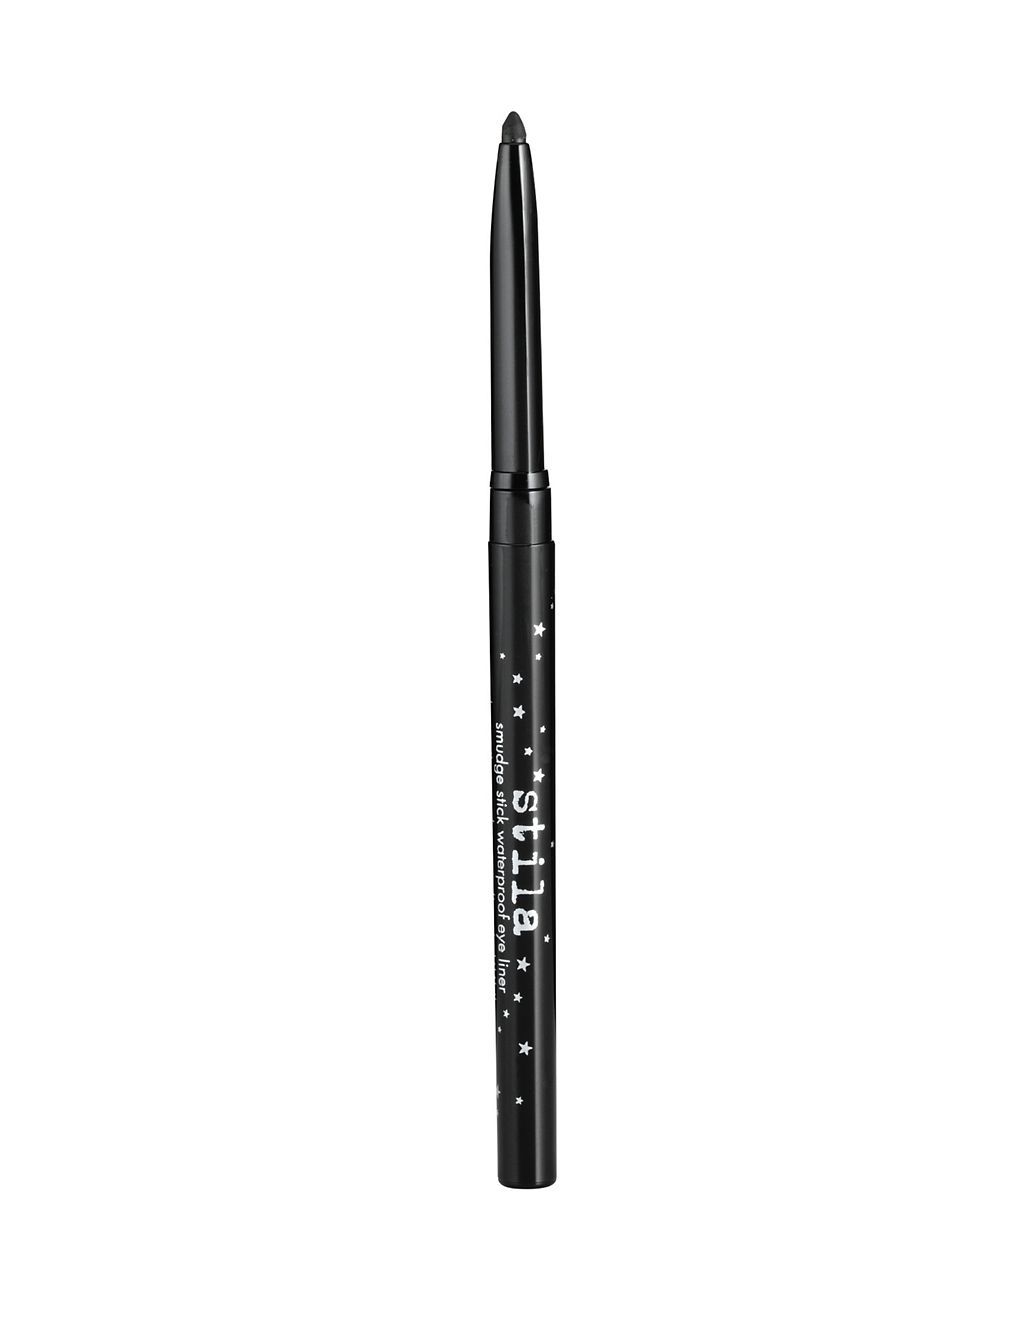 Smudge Stick Waterproof Eyeliner 0.3g | Marks & Spencer (UK)